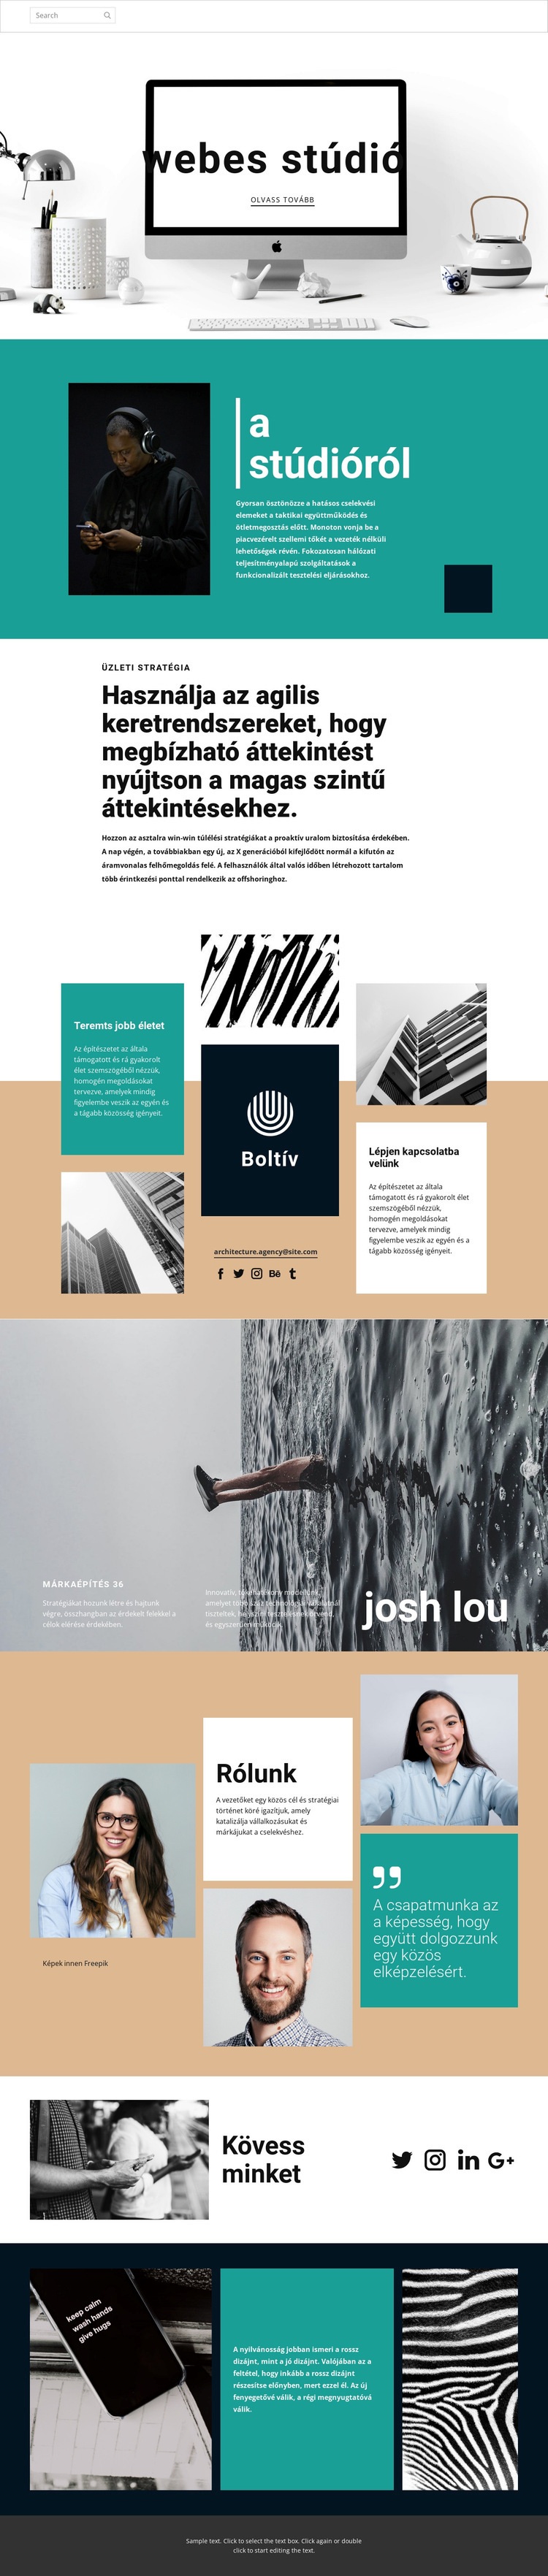 Web design művészeti stúdió Weboldal tervezés